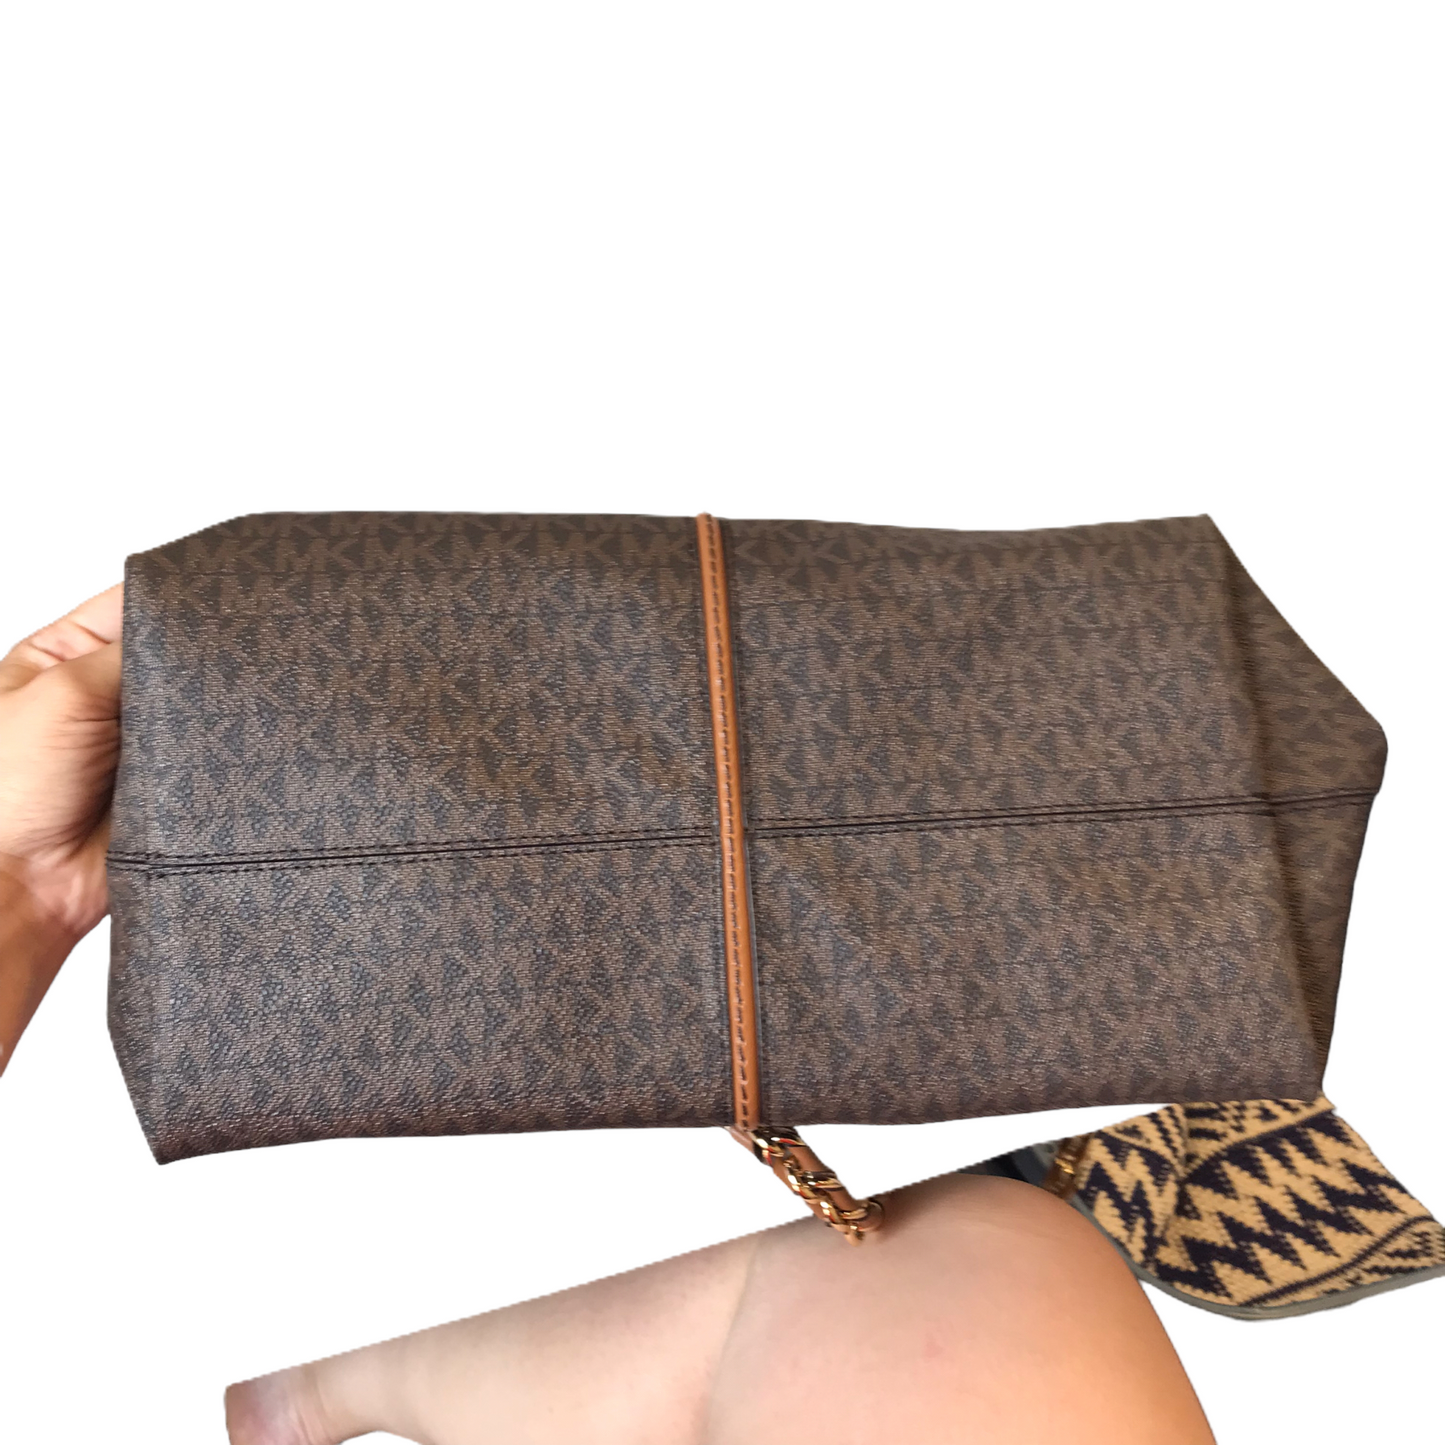 Handbag Designer By Michael Kors, Size: Large